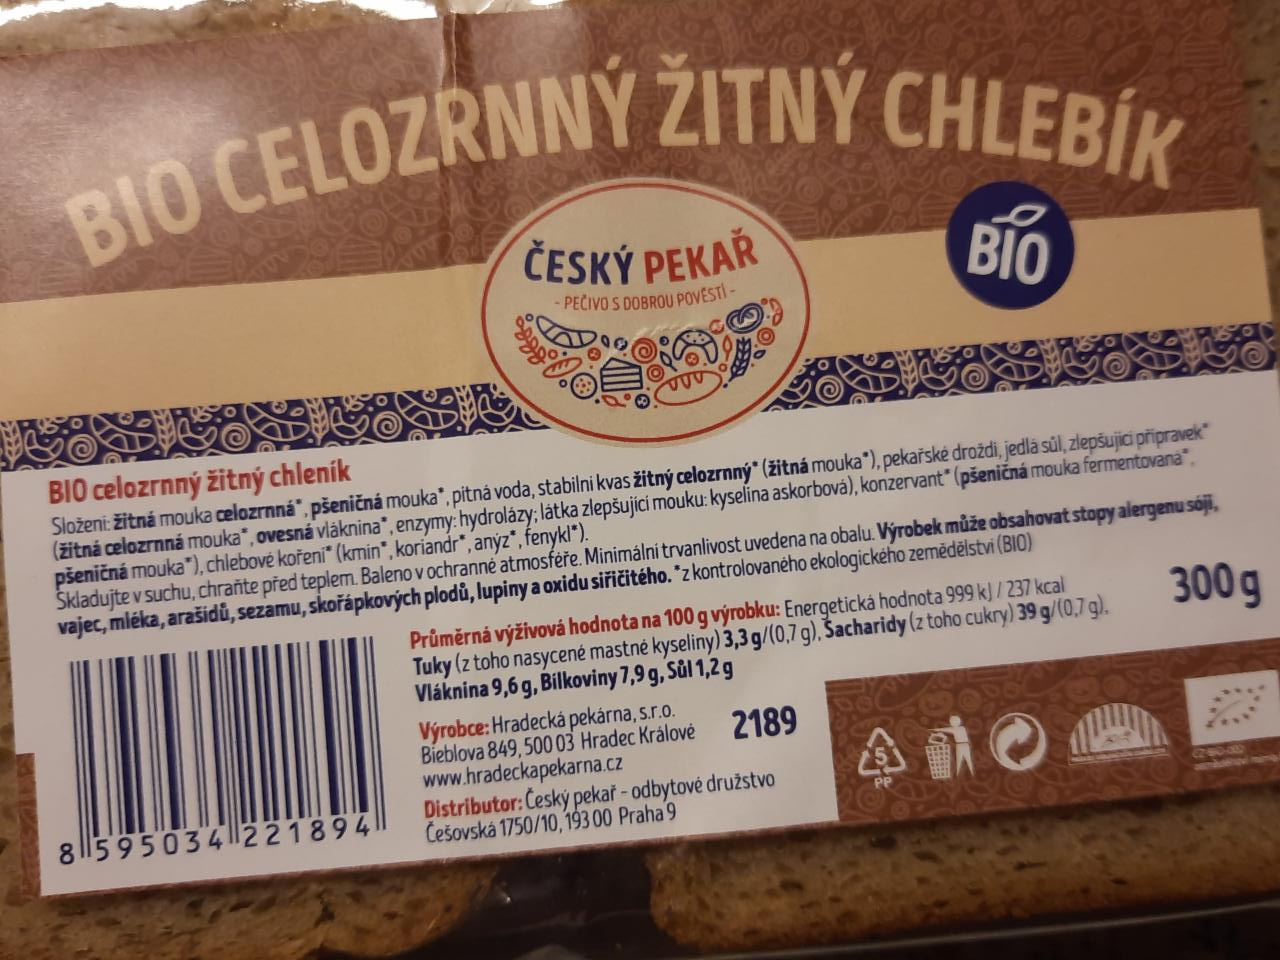 Fotografie - Bio Celozrnný žitný chlebík Český pekař